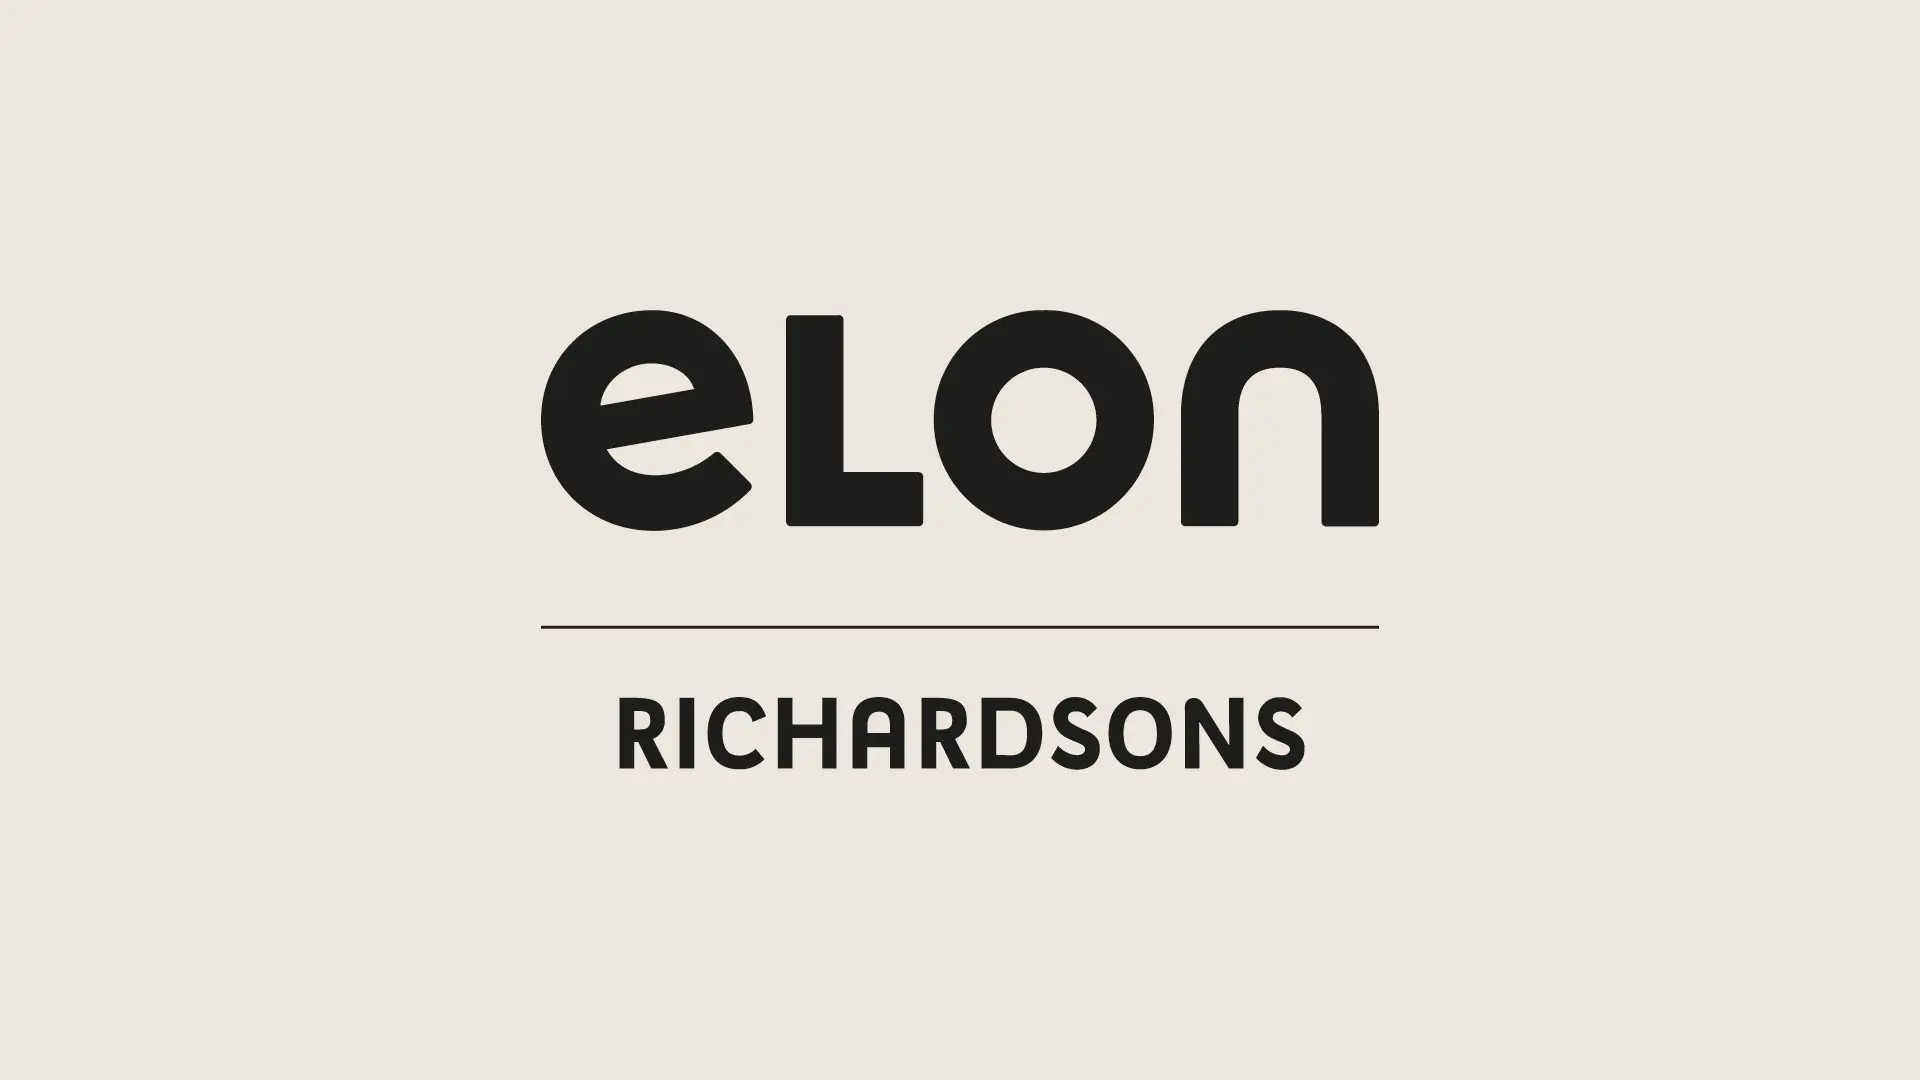 En casebild för projektet Elon Richardsons av reklambyrån Gullström & CO i Karlstad.